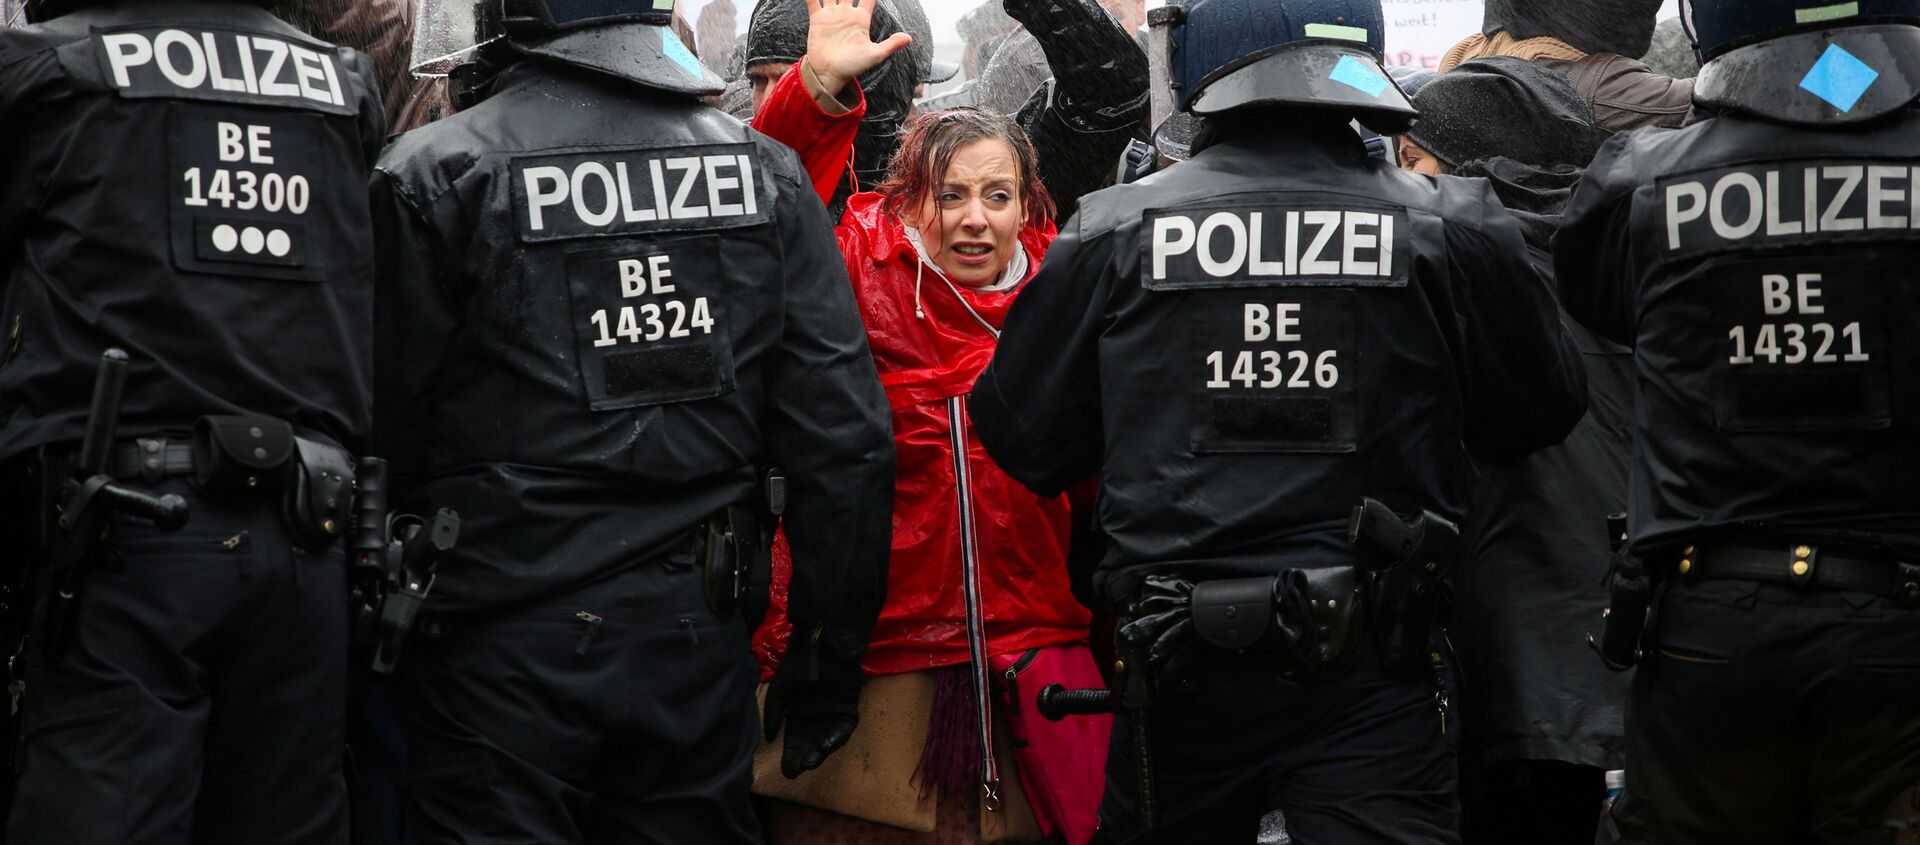 متظاهرون يرفعون أيديهم أمام ضباط الشرطة خلال احتجاجات ضد قيود الحكومة الألمانية التي فرضتها لاحتواء وباءكورونا (كوفيد-19) ، بالقرب من بوابة براندنبورغ في برلين، 18 نوفمبر 2020. - سبوتنيك عربي, 1920, 21.03.2021